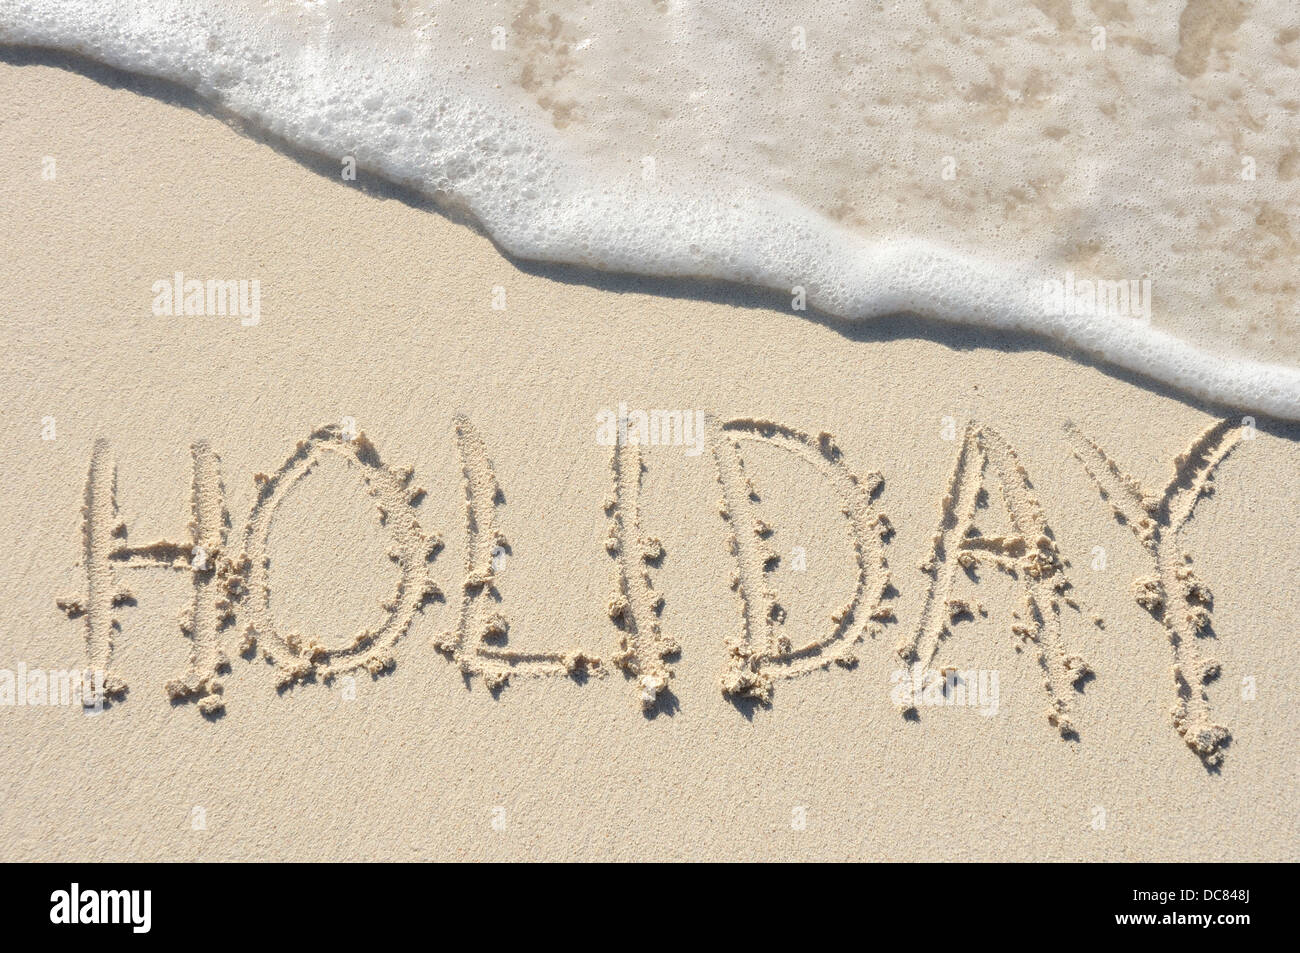 Das Wort "Urlaub" an einem Strand in den Sand geschrieben Stockfoto